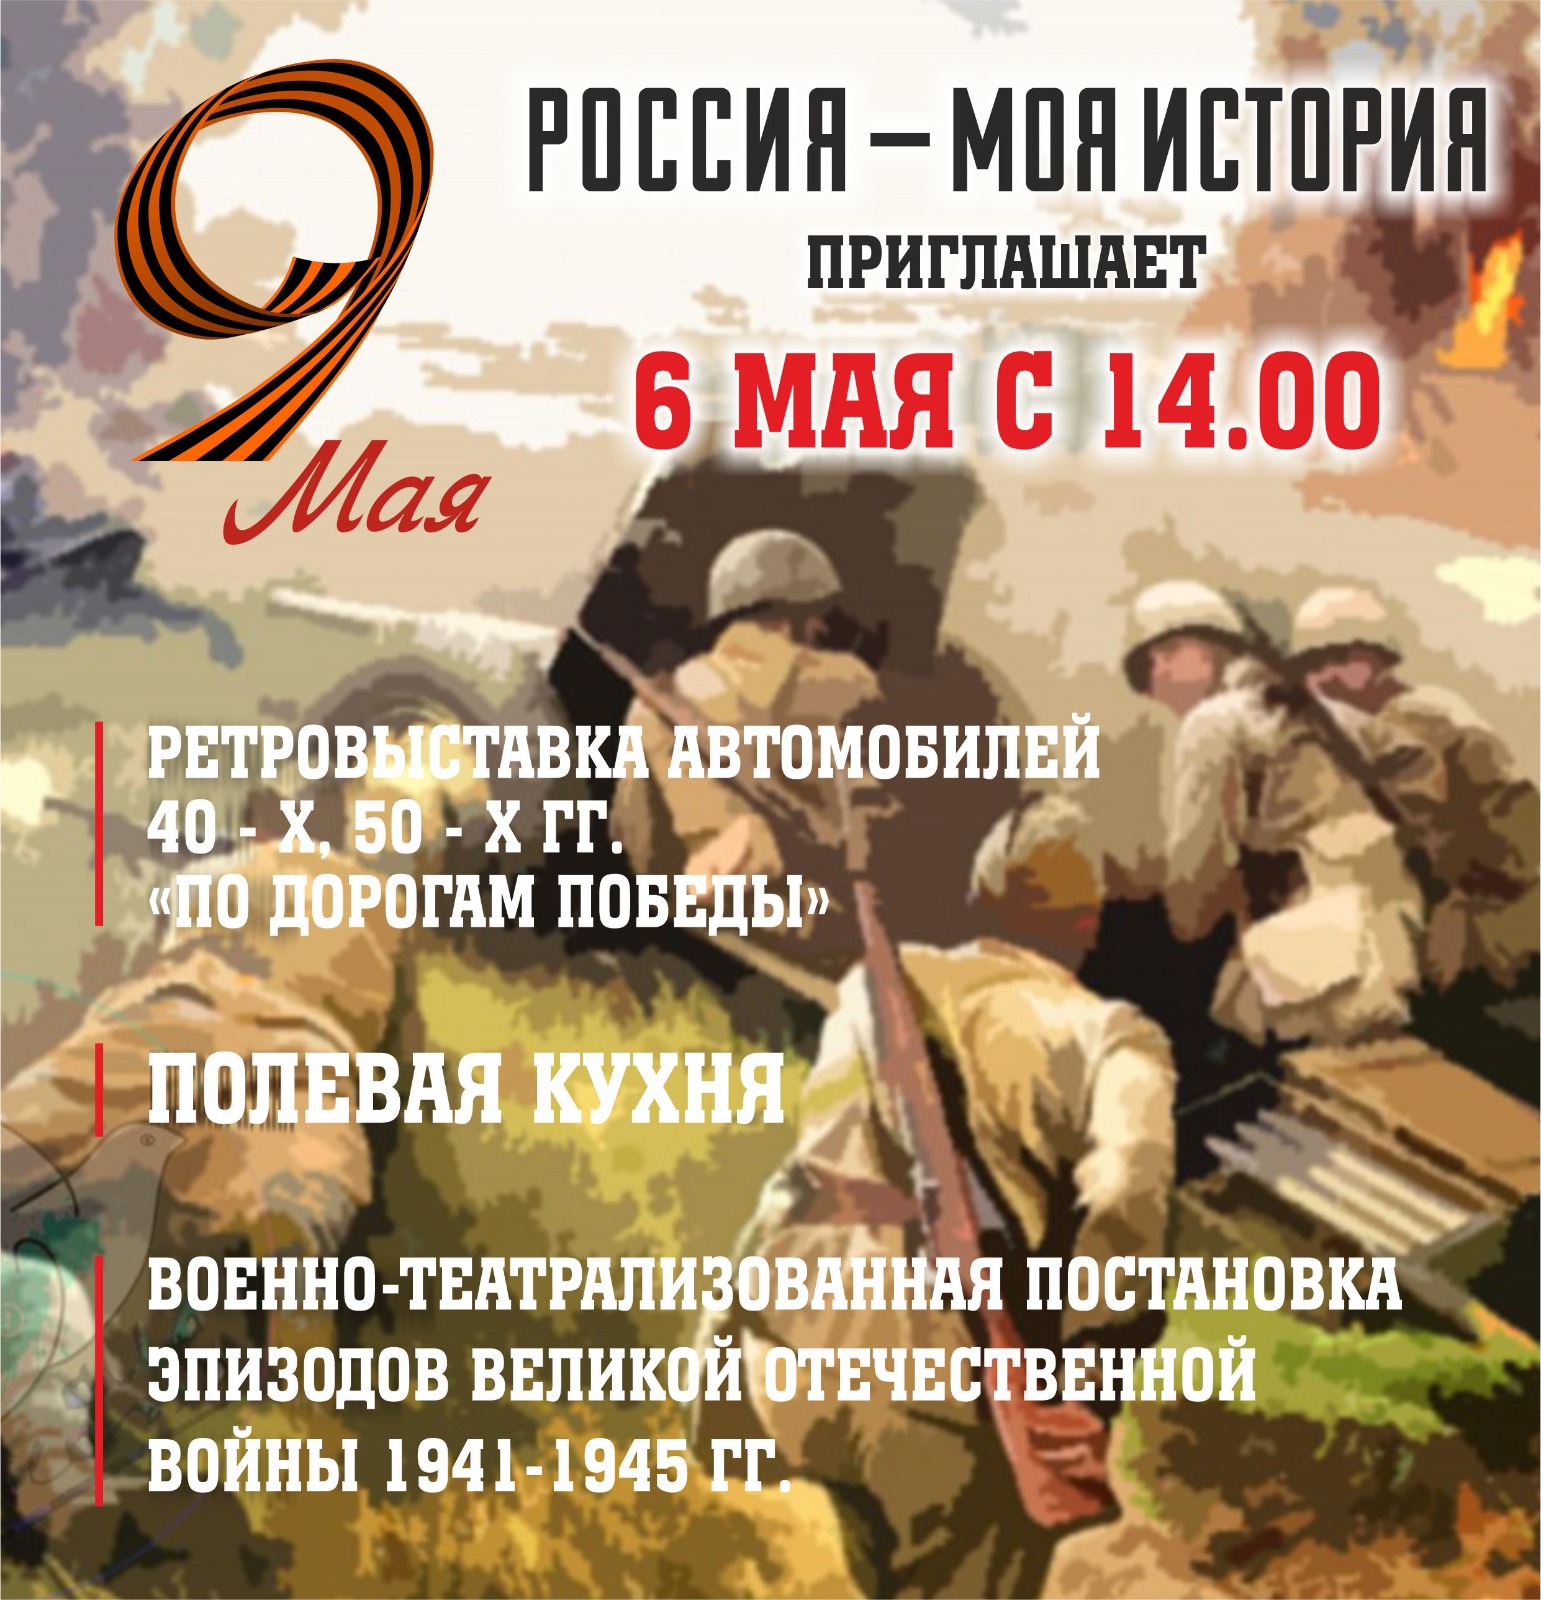 Мероприятия в честь Дня Победы пройдут в парке «Россия — моя история» в Якутске